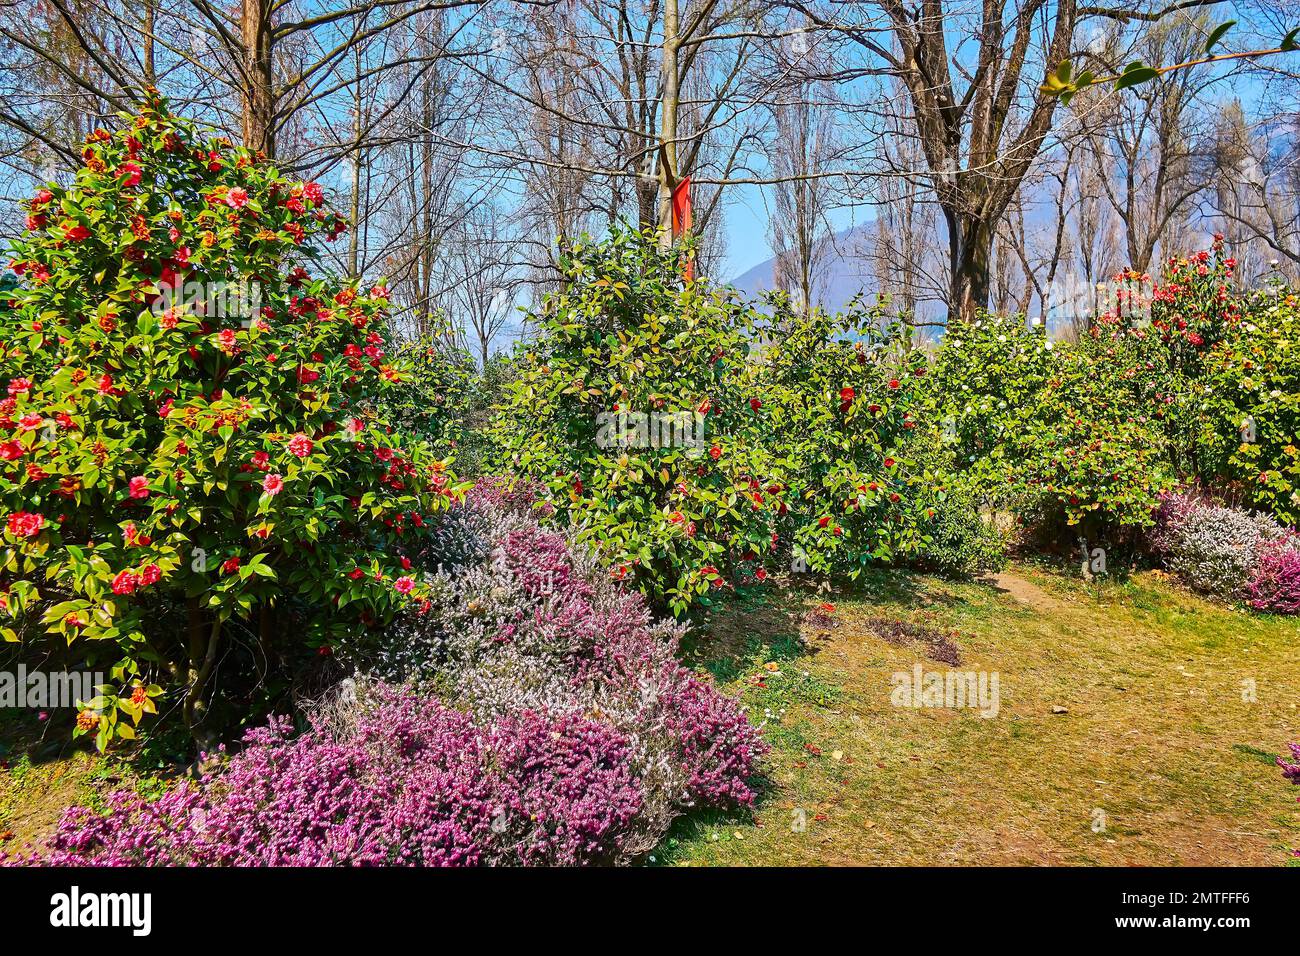 Visite el pintoresco parque Camellia a orillas del lago Maggiore durante el festival de primavera debido a la flor de la camelia, Locarno, Suiza Foto de stock